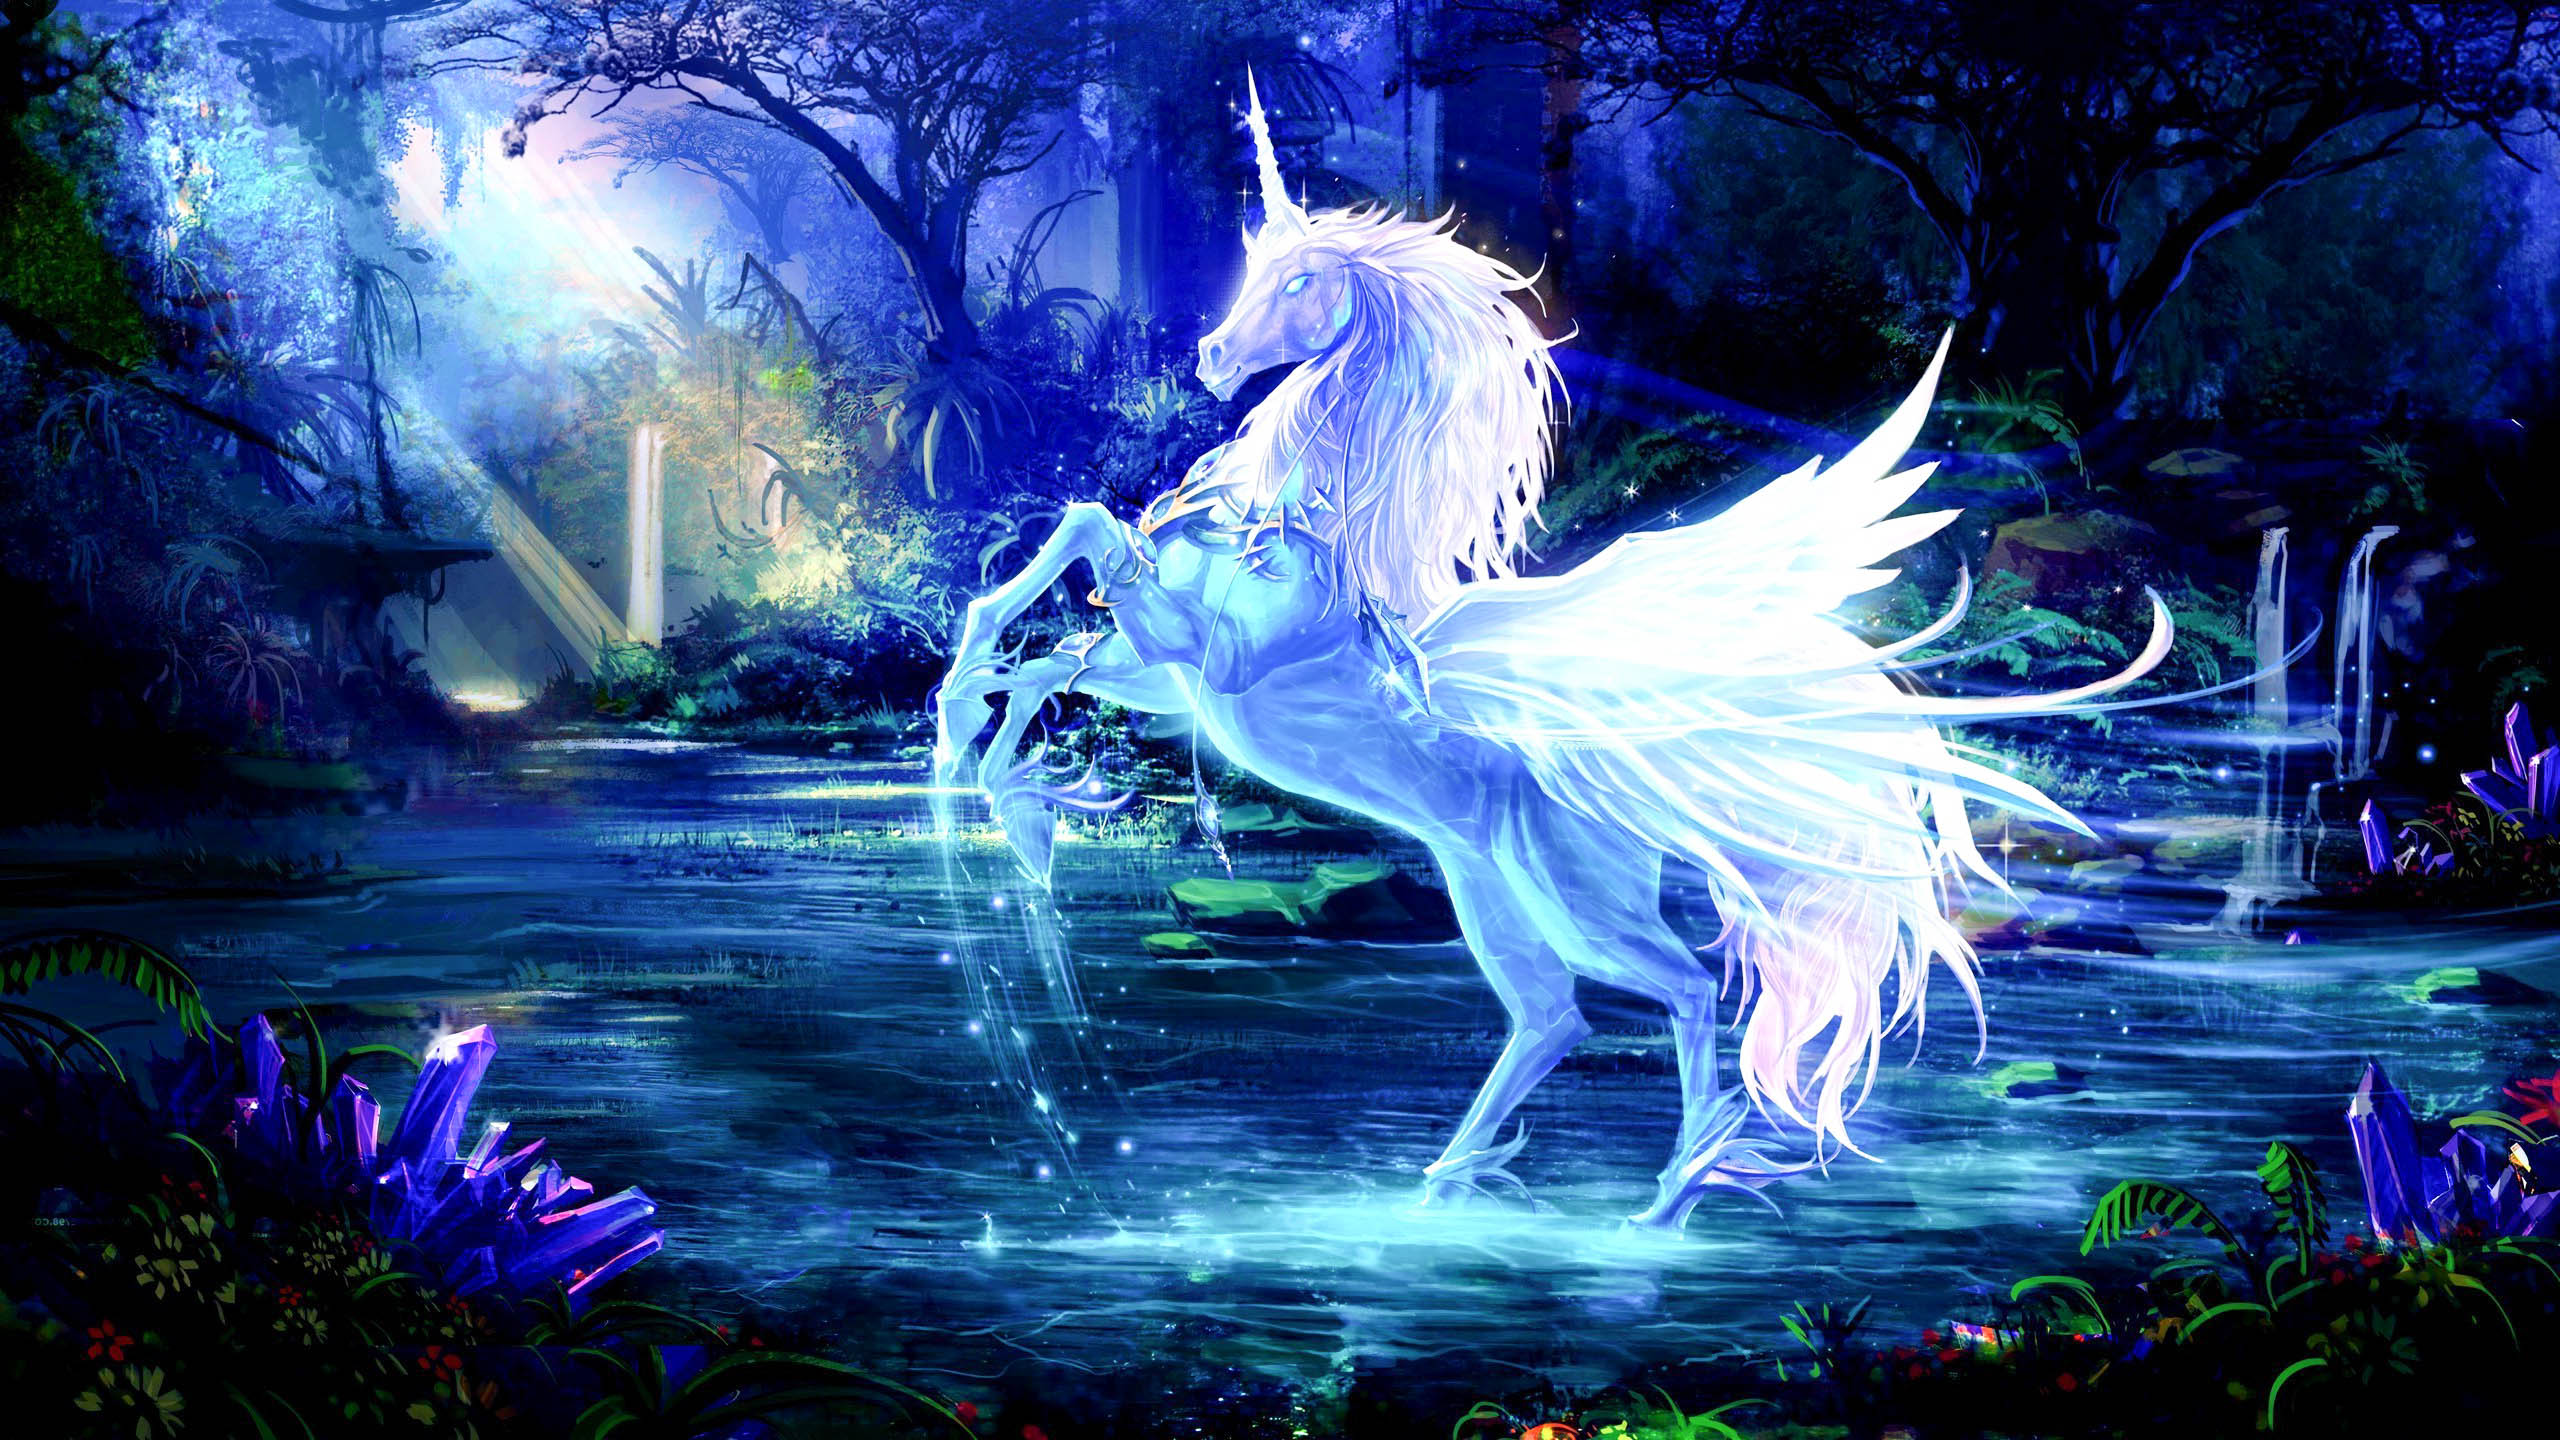 Tải ngay hình nền Pegasus đẹp lung linh, miễn phí tại đây! Hình nền này sẽ khiến máy tính của bạn trở nên lấp lánh và độc đáo hơn bao giờ hết. Với màu sắc tươi sáng và hình ảnh tinh tế, hình nền Pegasus sẽ khiến bạn thích thú từ cái nhìn đầu tiên.